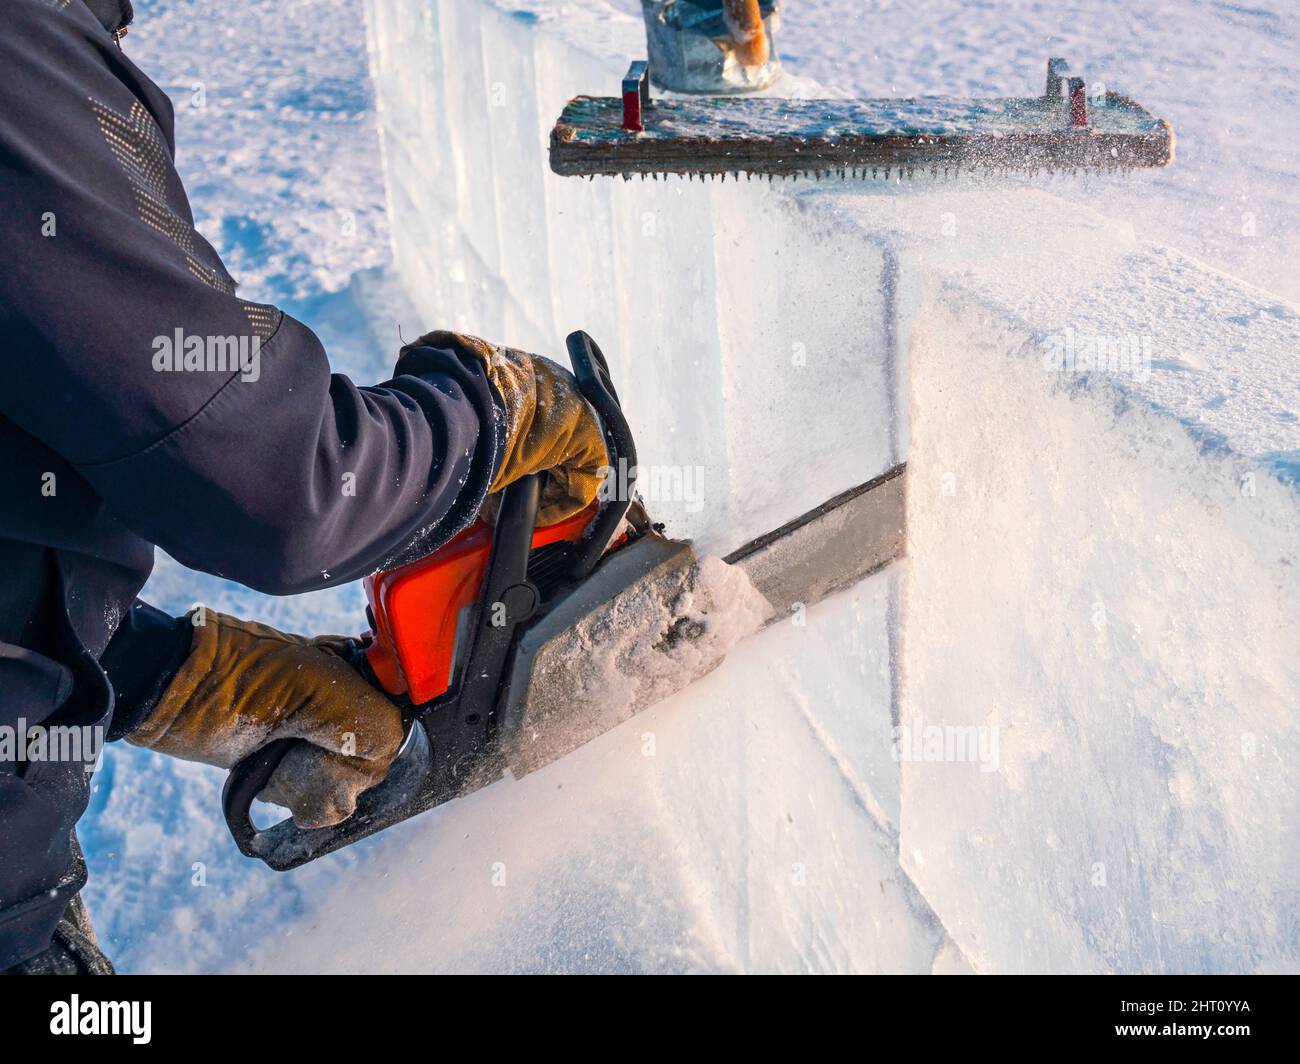 Realizzare sculture di ghiaccio. Un uomo taglia la superficie in un blocco di ghiaccio con una sega a benzina sul lago Baikal. Foto Stock